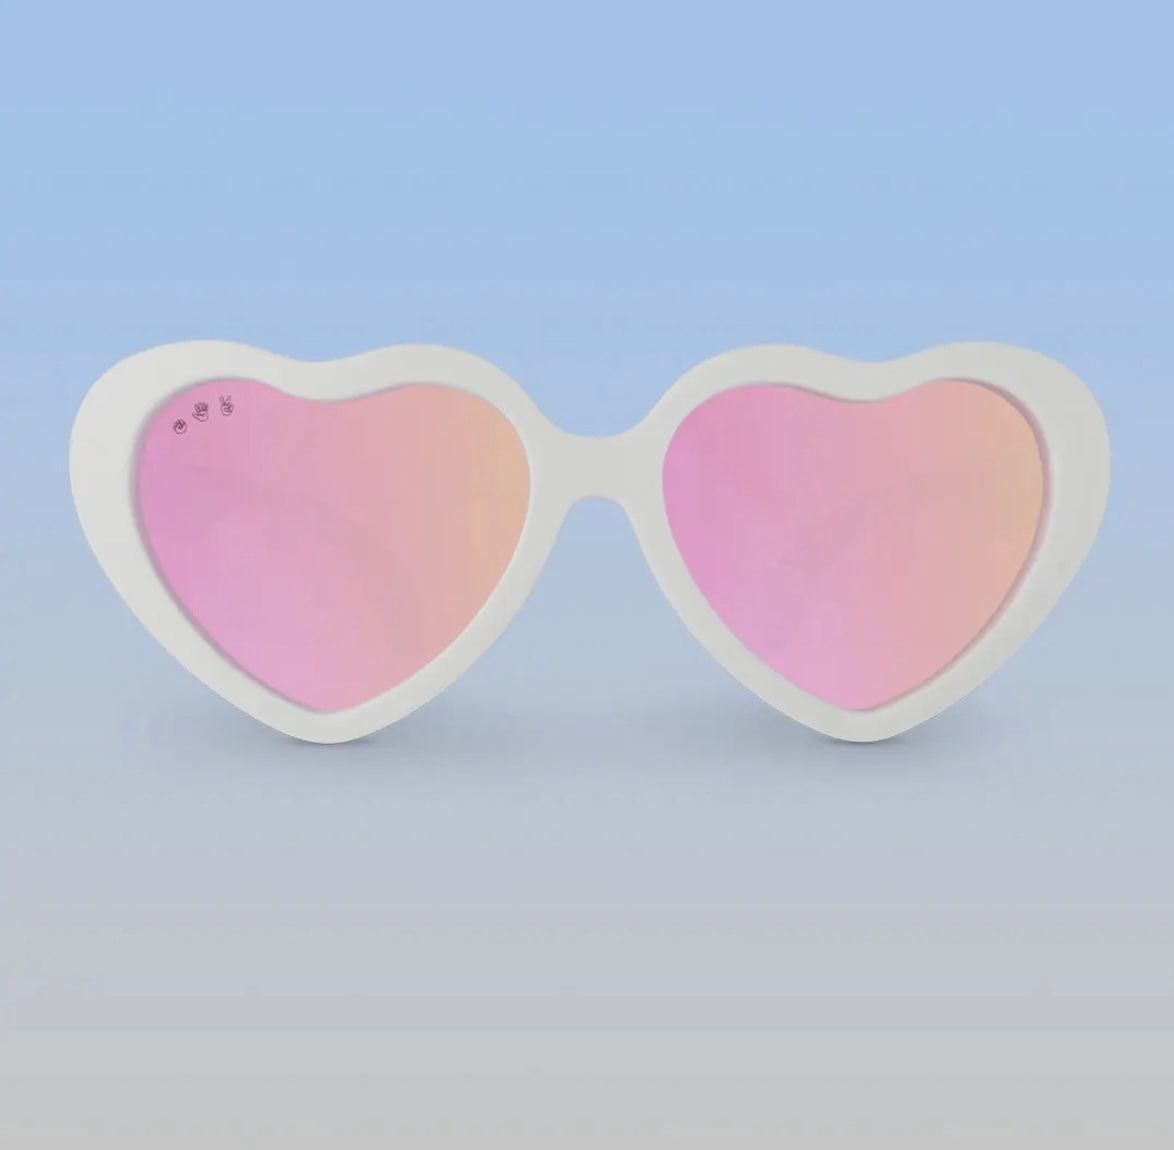 Roshambo Toddler Heart Sunglasses - Ice Ice Baby White, Rose Gold Lens